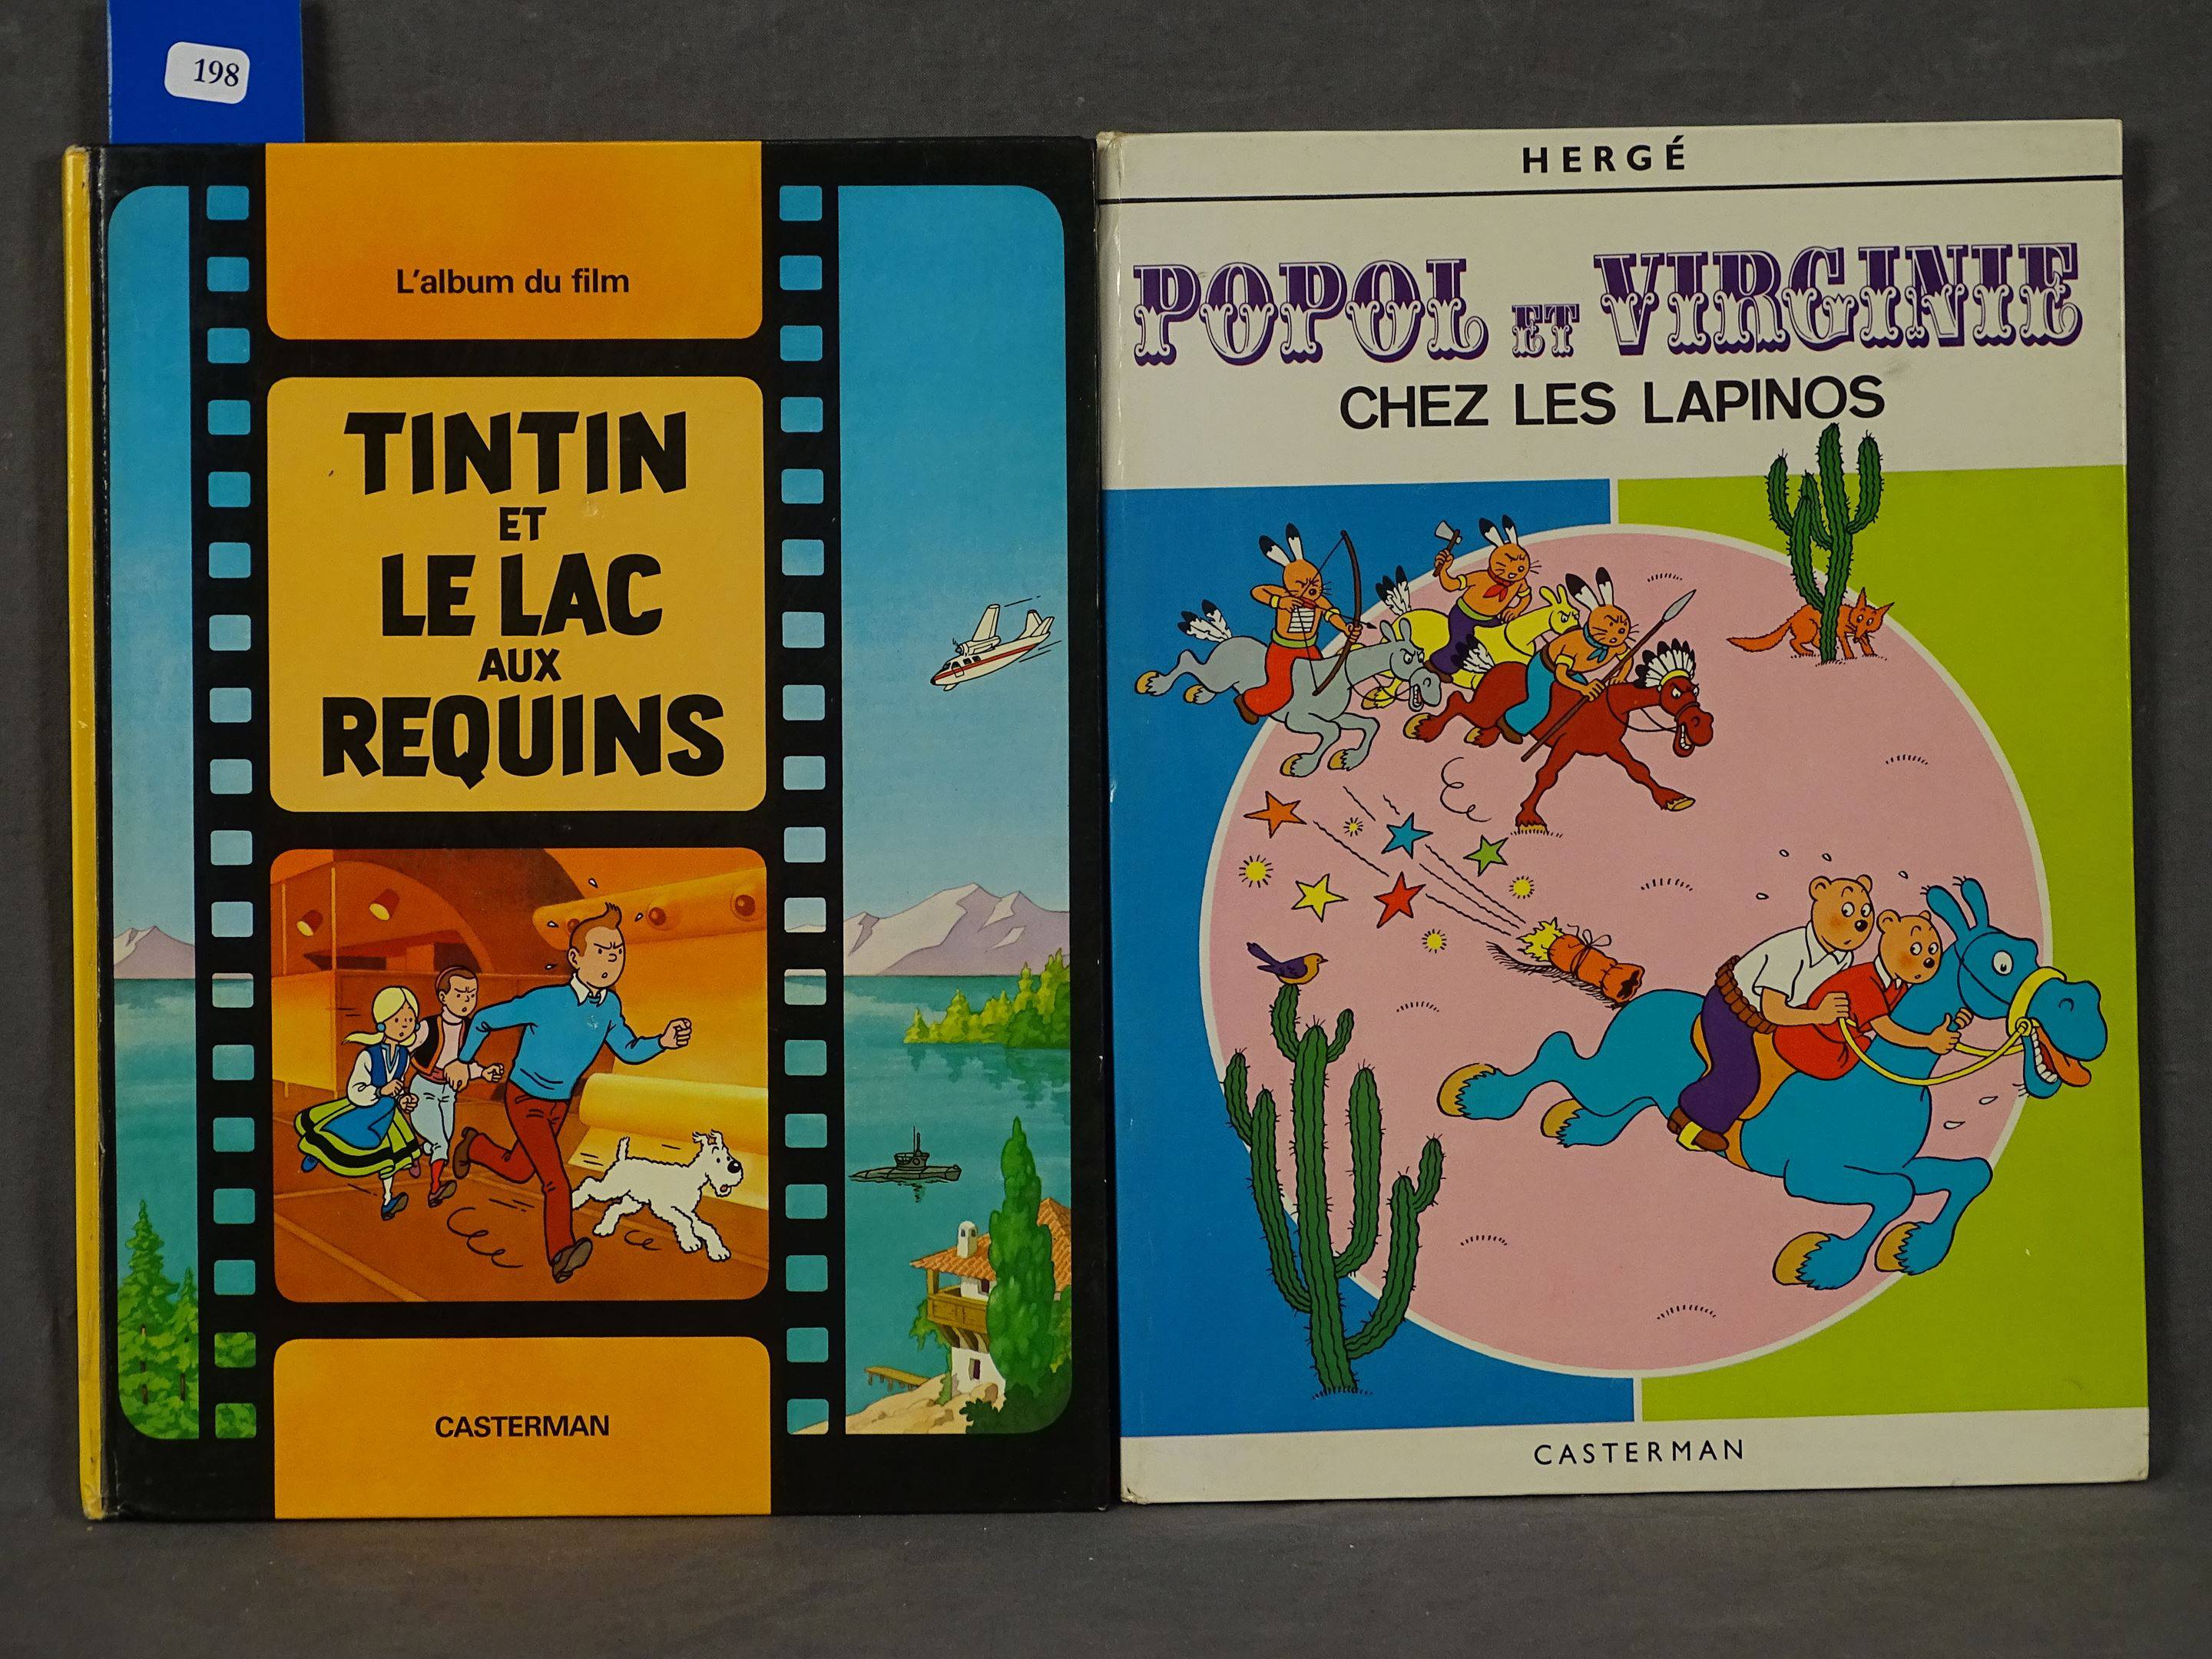 L'album du film Tintin et le lac aux requins 